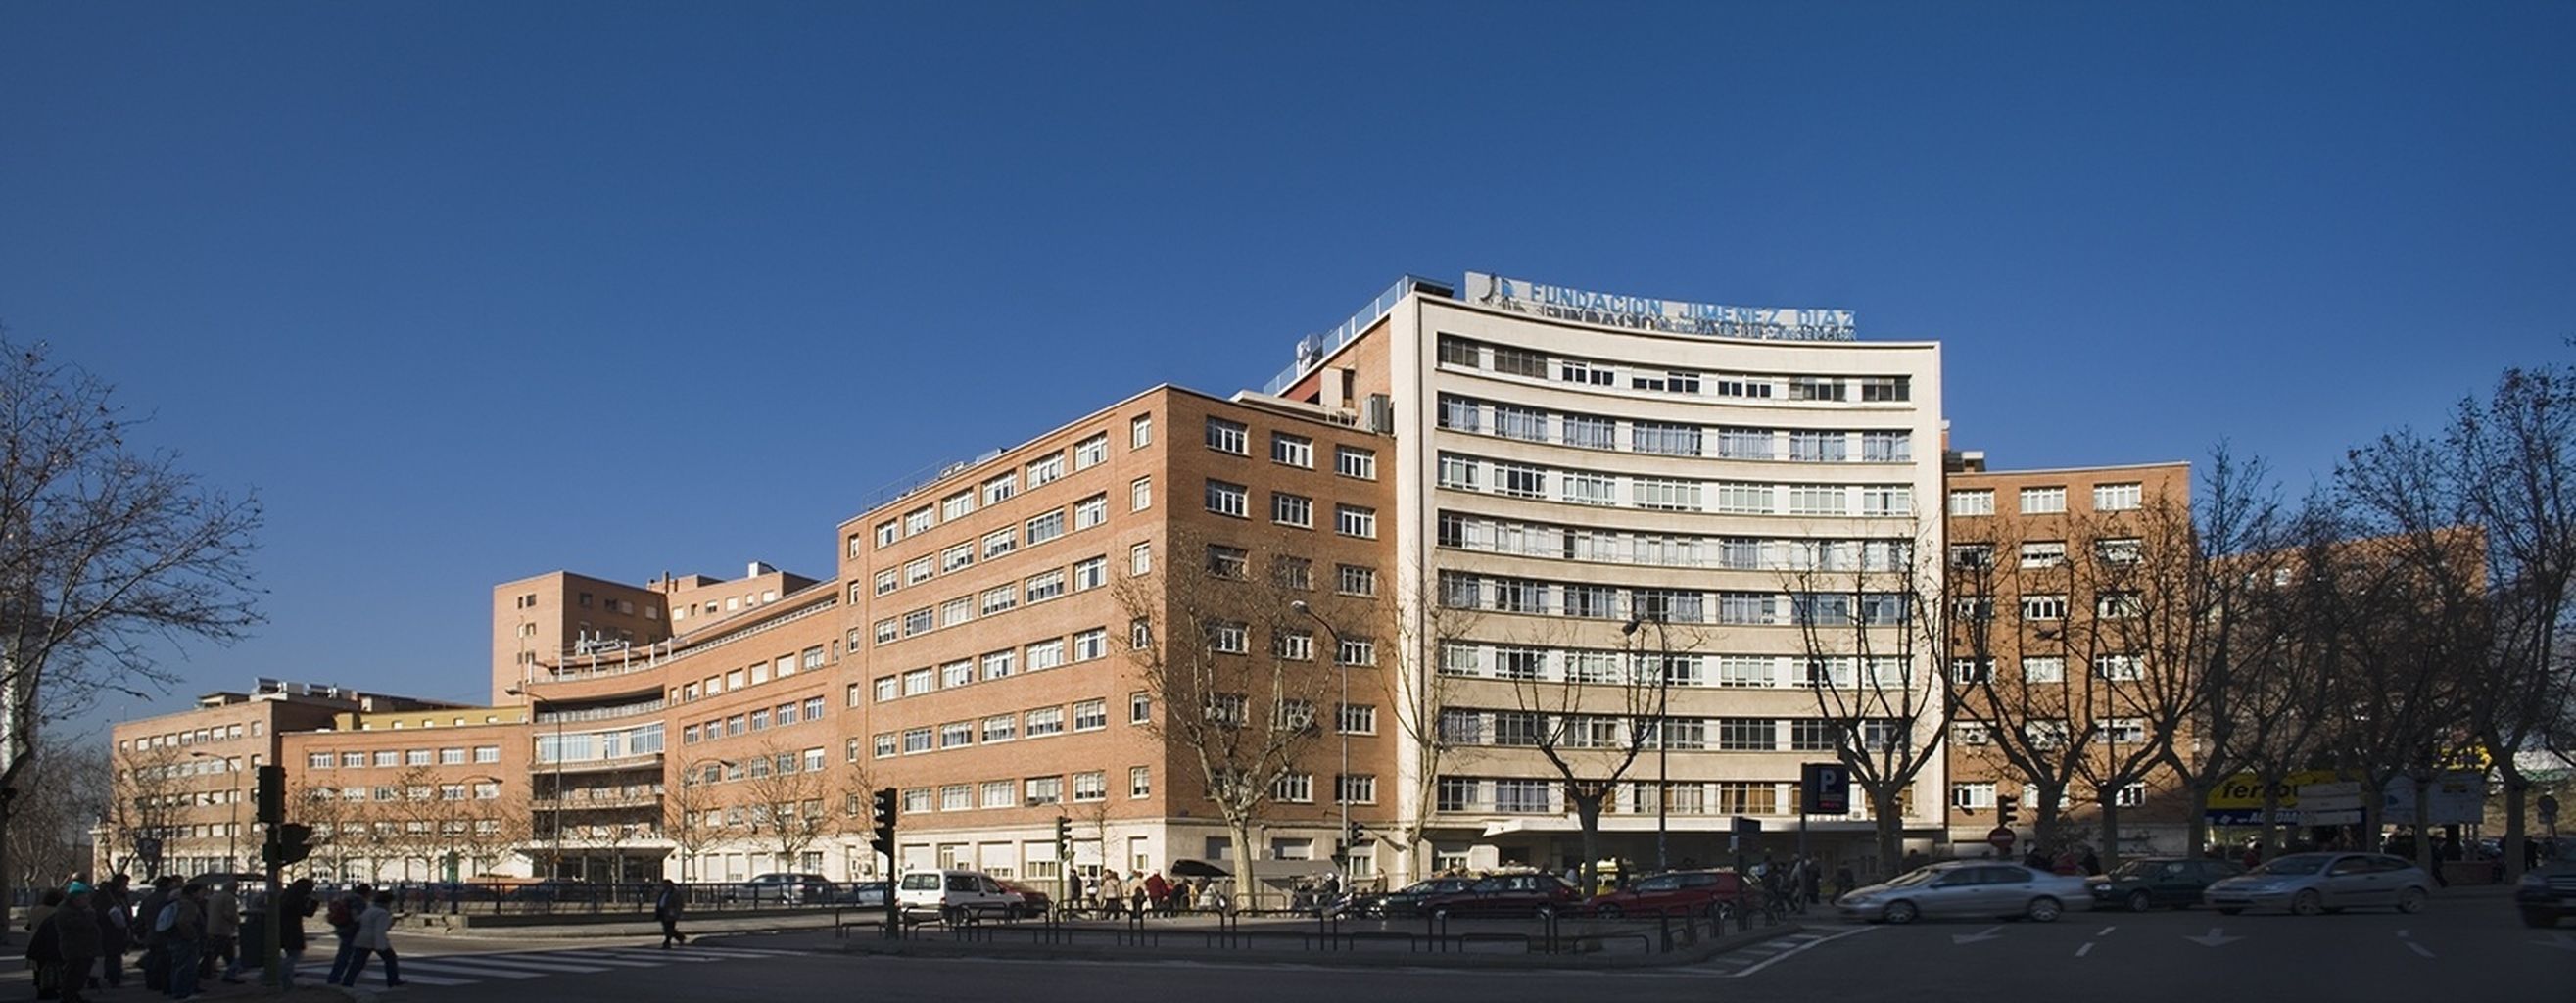 Hospital Universitario Fundación Jiménez Díaz.